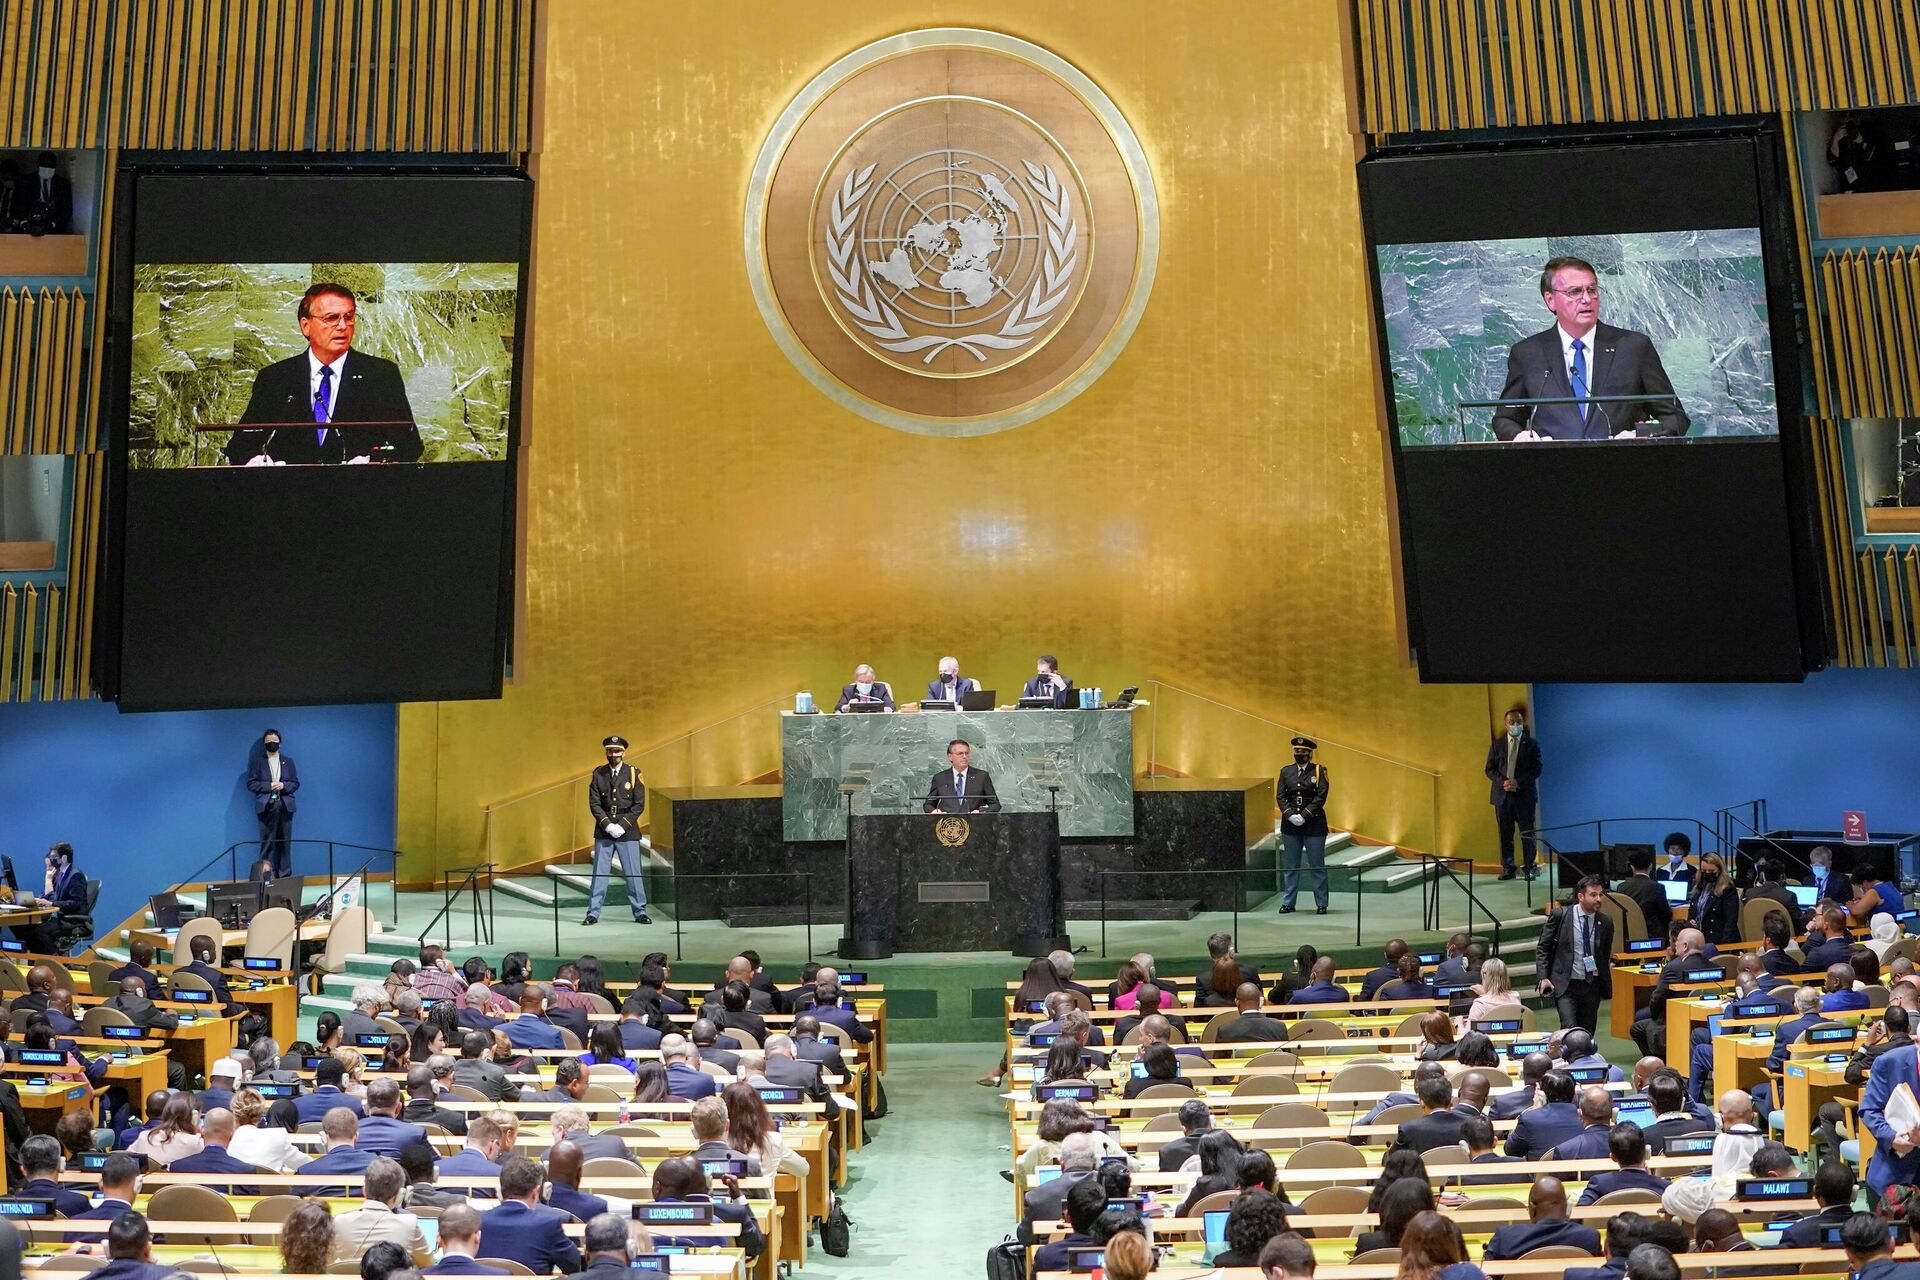 O presidente brasileiro, Jair Bolsonaro, discursa durante a 77ª Assembleia Geral da Organização das Nações Unidas (ONU), em Nova York, em 20 de setembro de 2022 - Sputnik Brasil, 1920, 20.09.2022